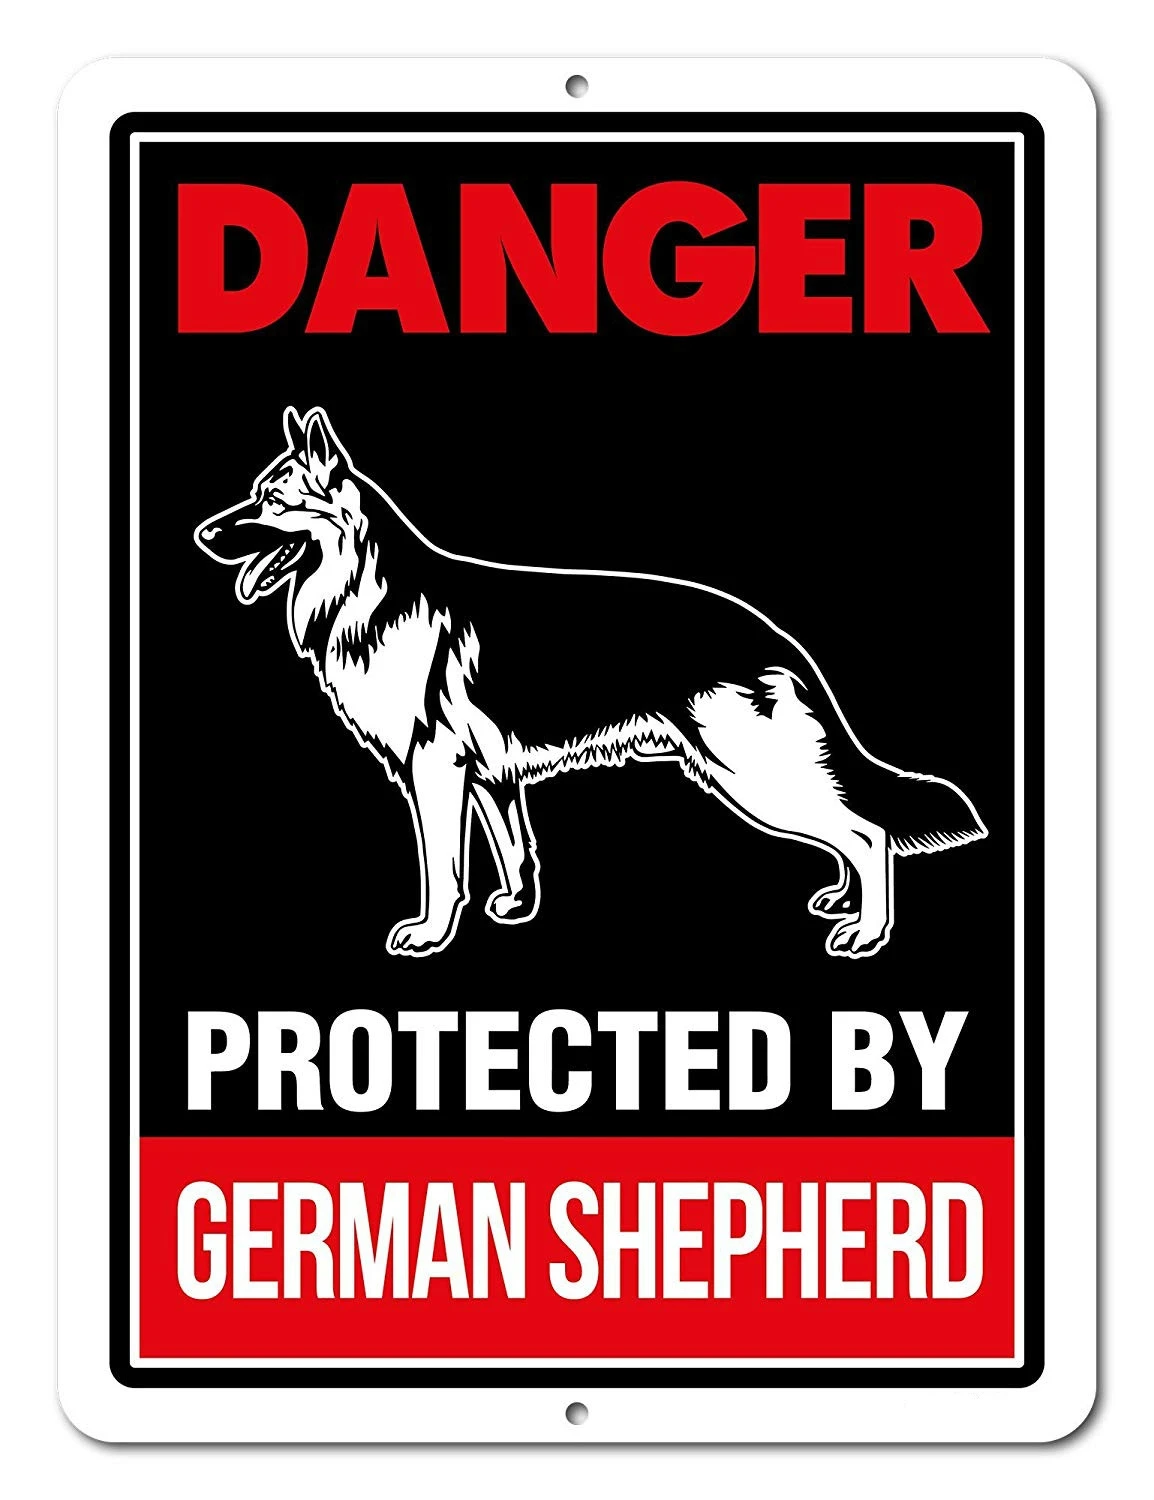 

Beware of German Shepherd Signs Danger Protected by German Shepherd Beware of Dog Warning Metal Aluminum Sign Guard Dog Sign